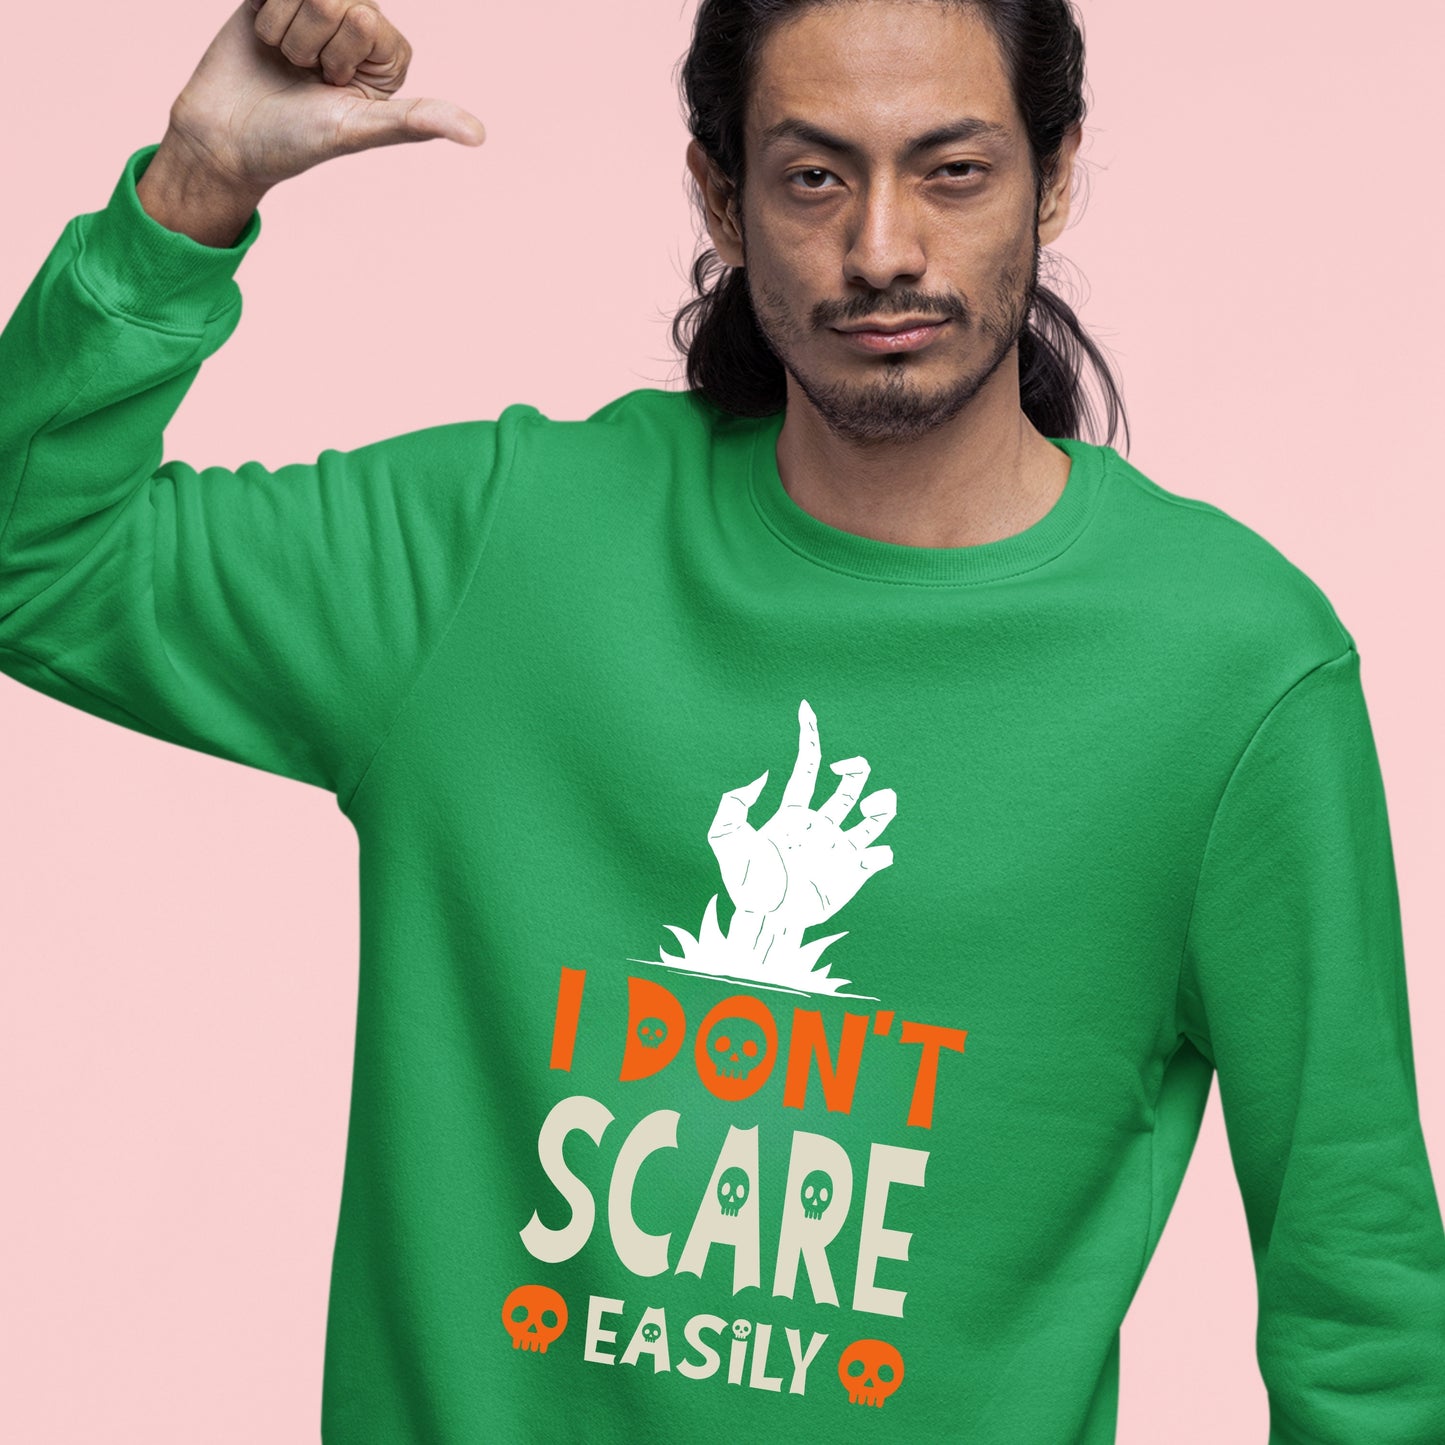 Halloween I Don't Scare Easily Sweatshirt, Halloween Gift Sweatshirt, Halloween Sweater, Cute Halloween Sweatshirt, Halloween Design Shirt